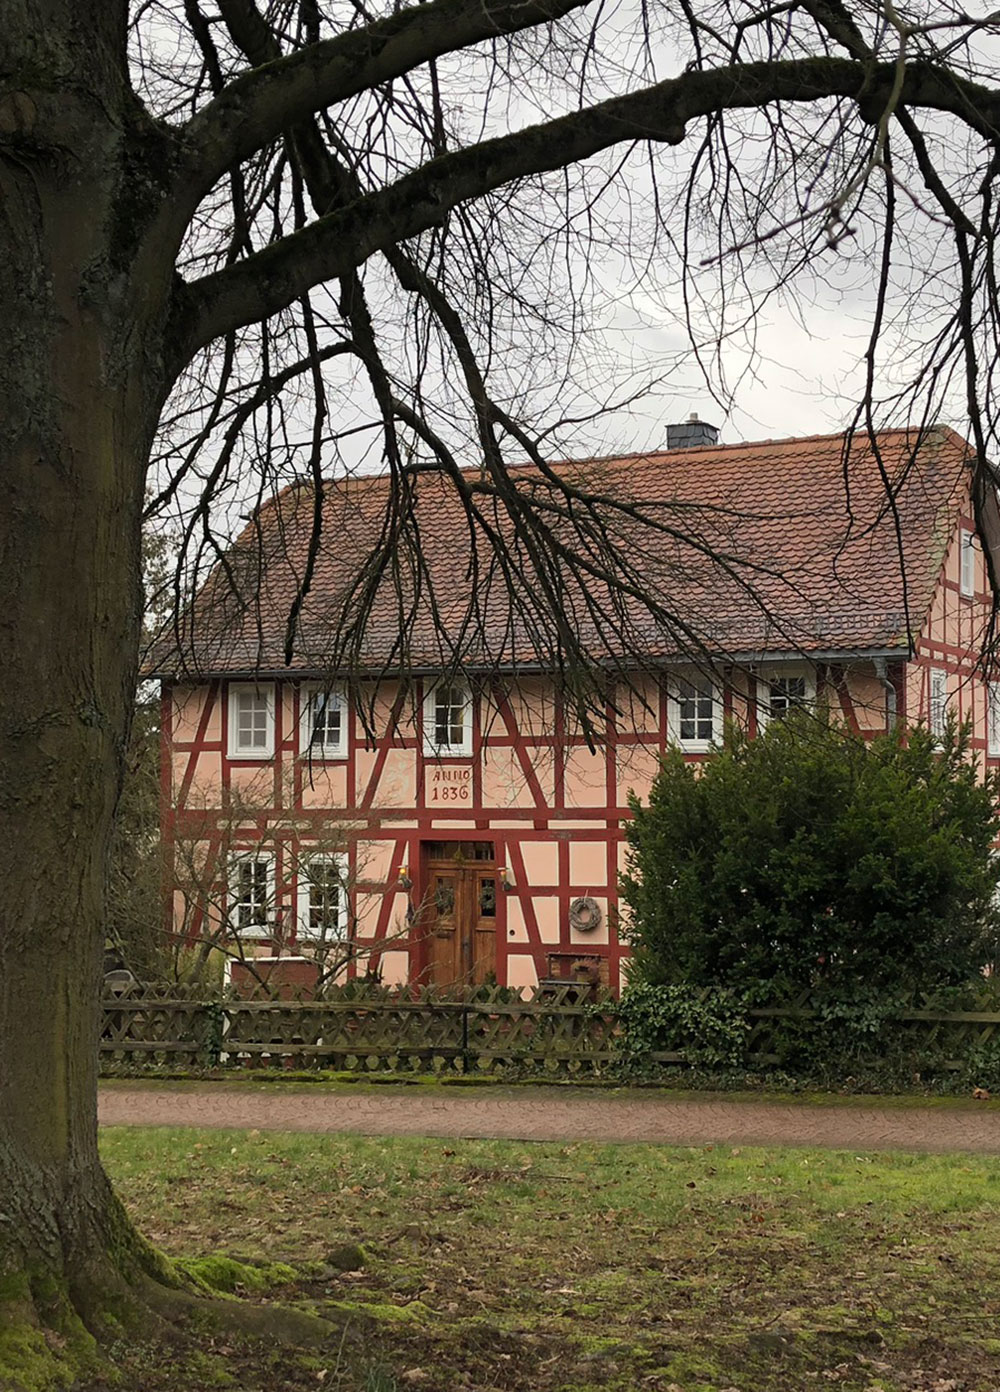 rosa Fachwerkhaus von 1836 in Wehrshausen